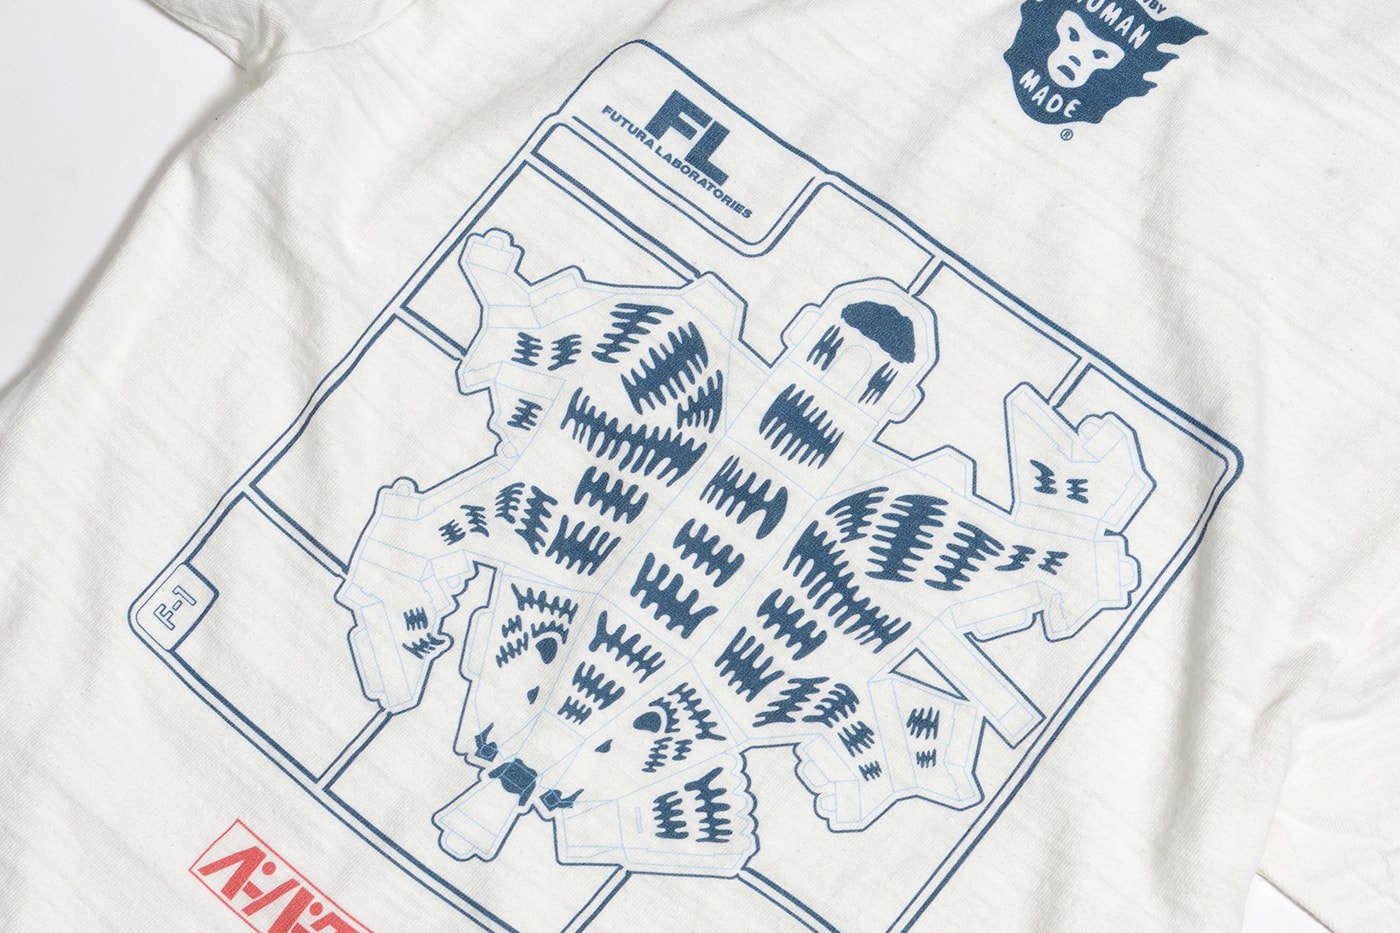 フューチュラ × ヒューマンメイドからコラボTシャツが発売 Futura Laboratories HUMAN MADE OALLERY Exclusive T-Shirt Capsule Release Info Date Buy Black White